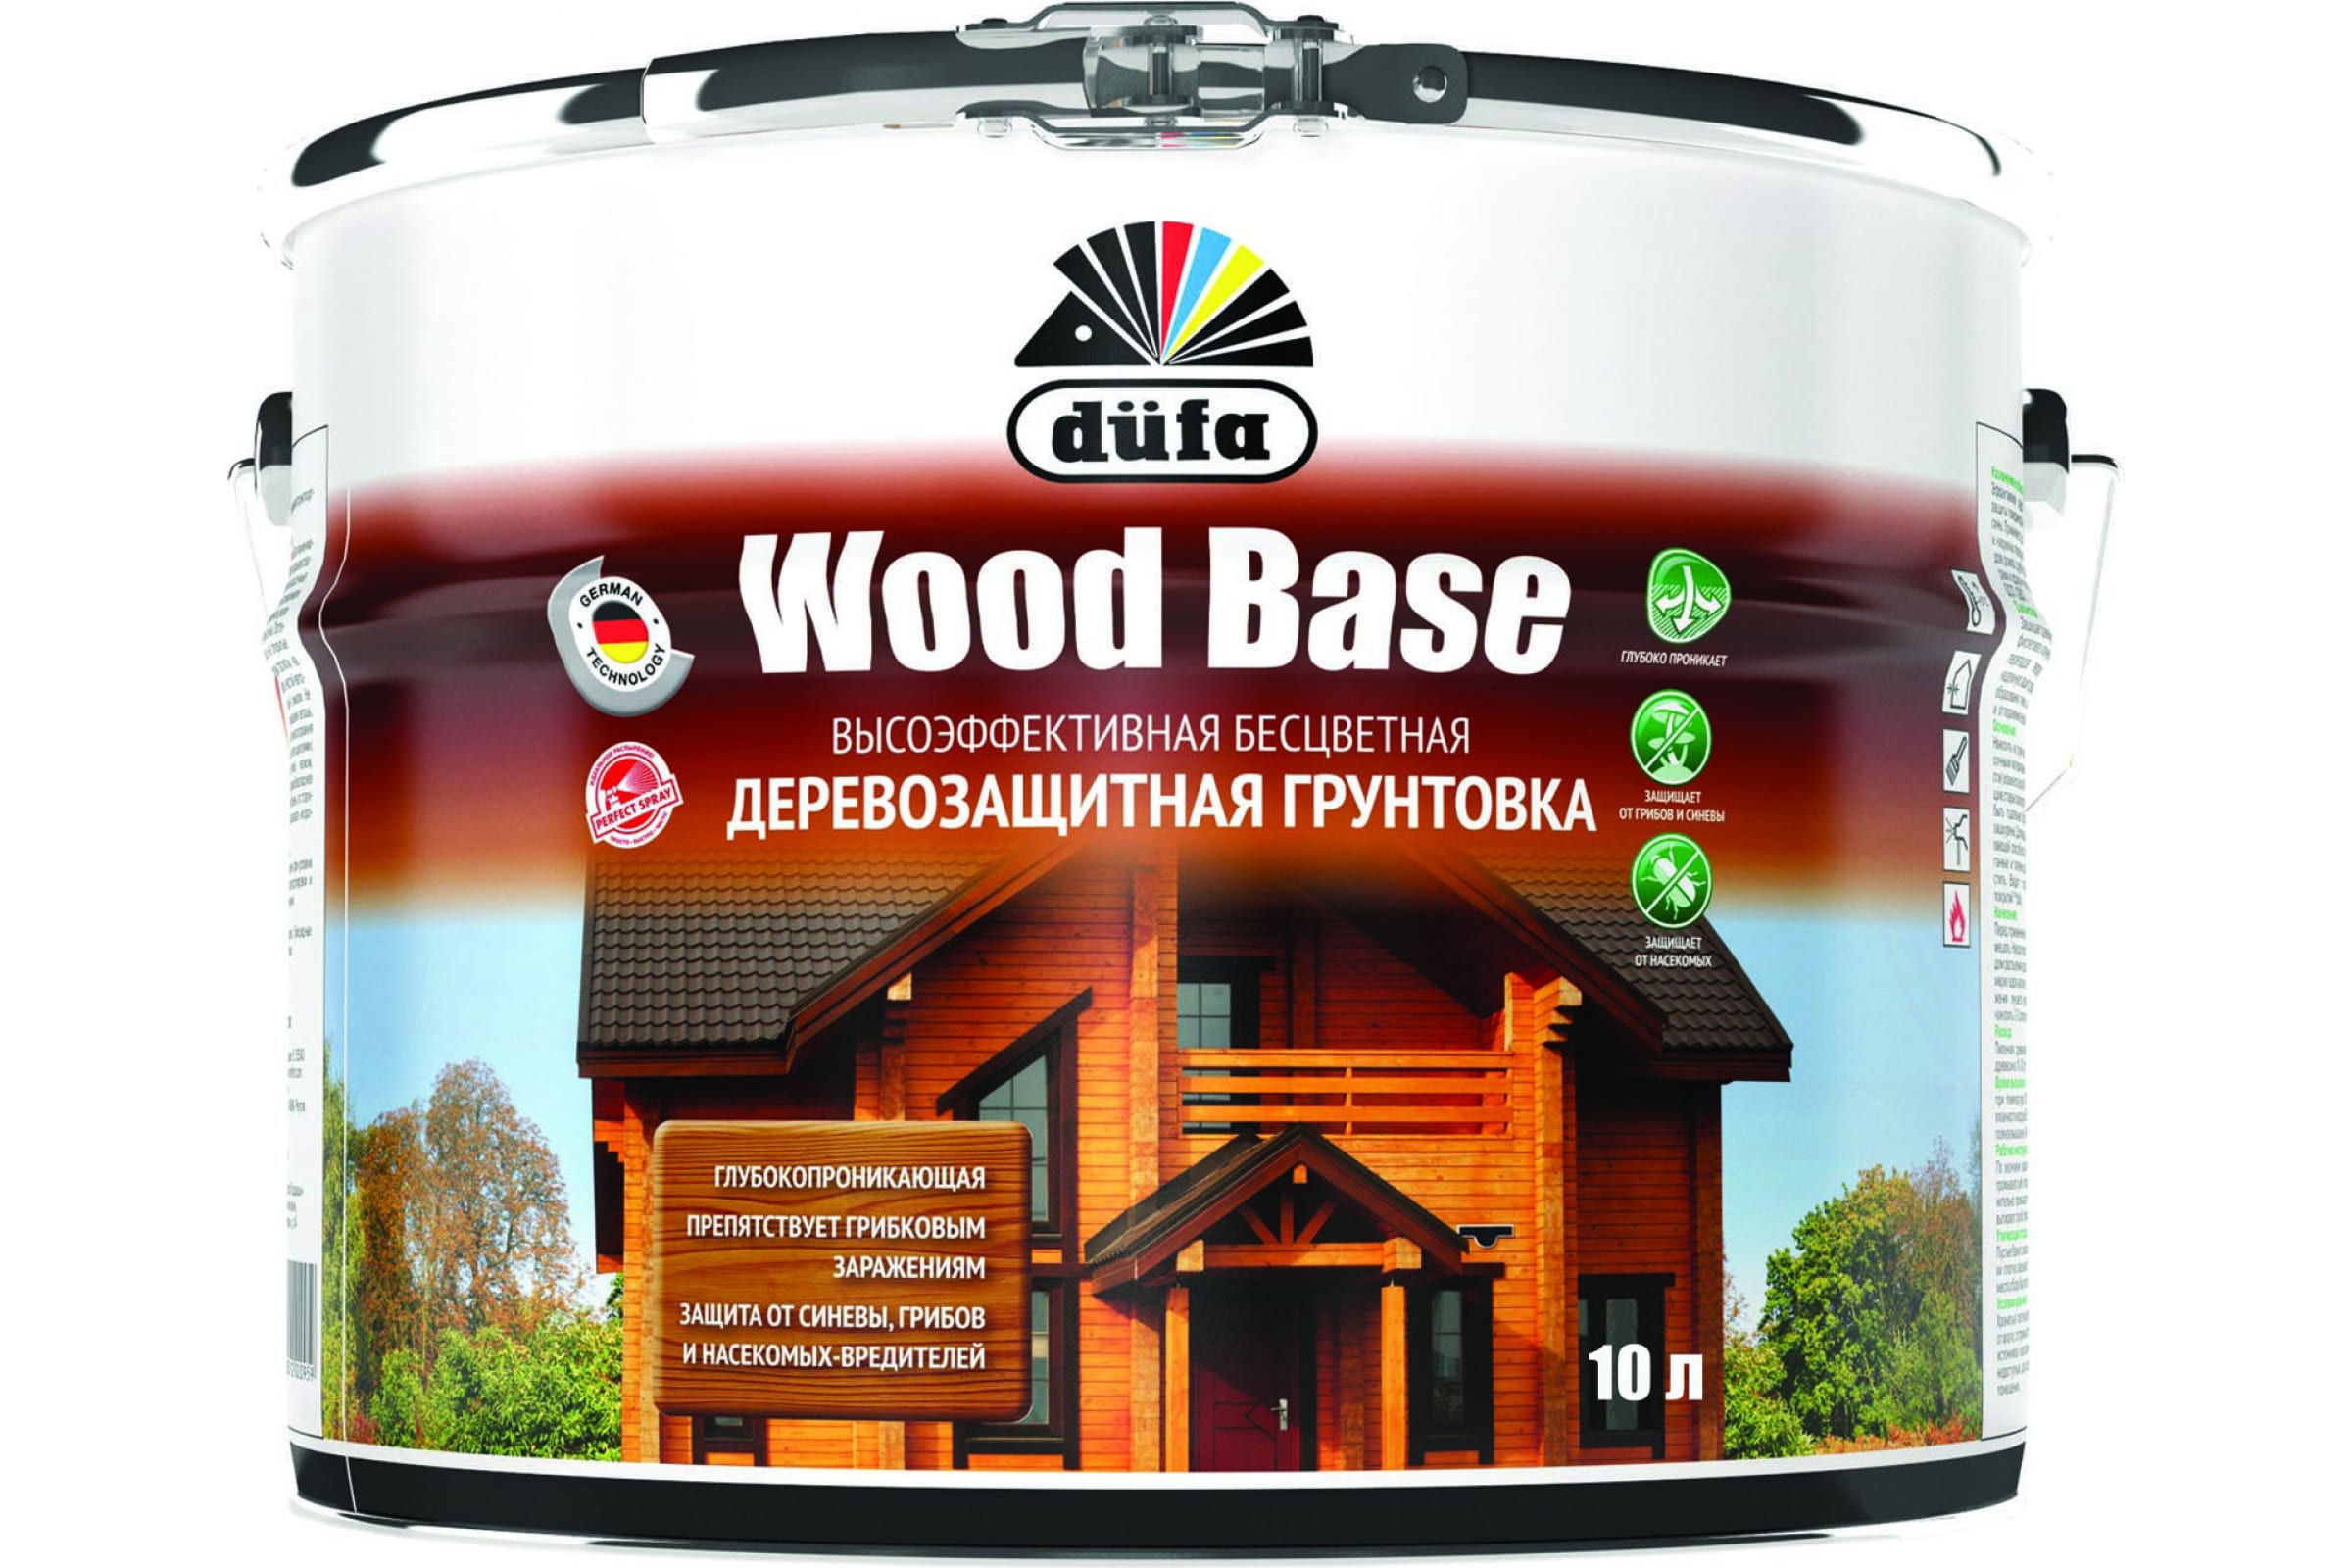 фото Dufa грунтовка wood base с биоцидом бесцветная 10л н0000005999